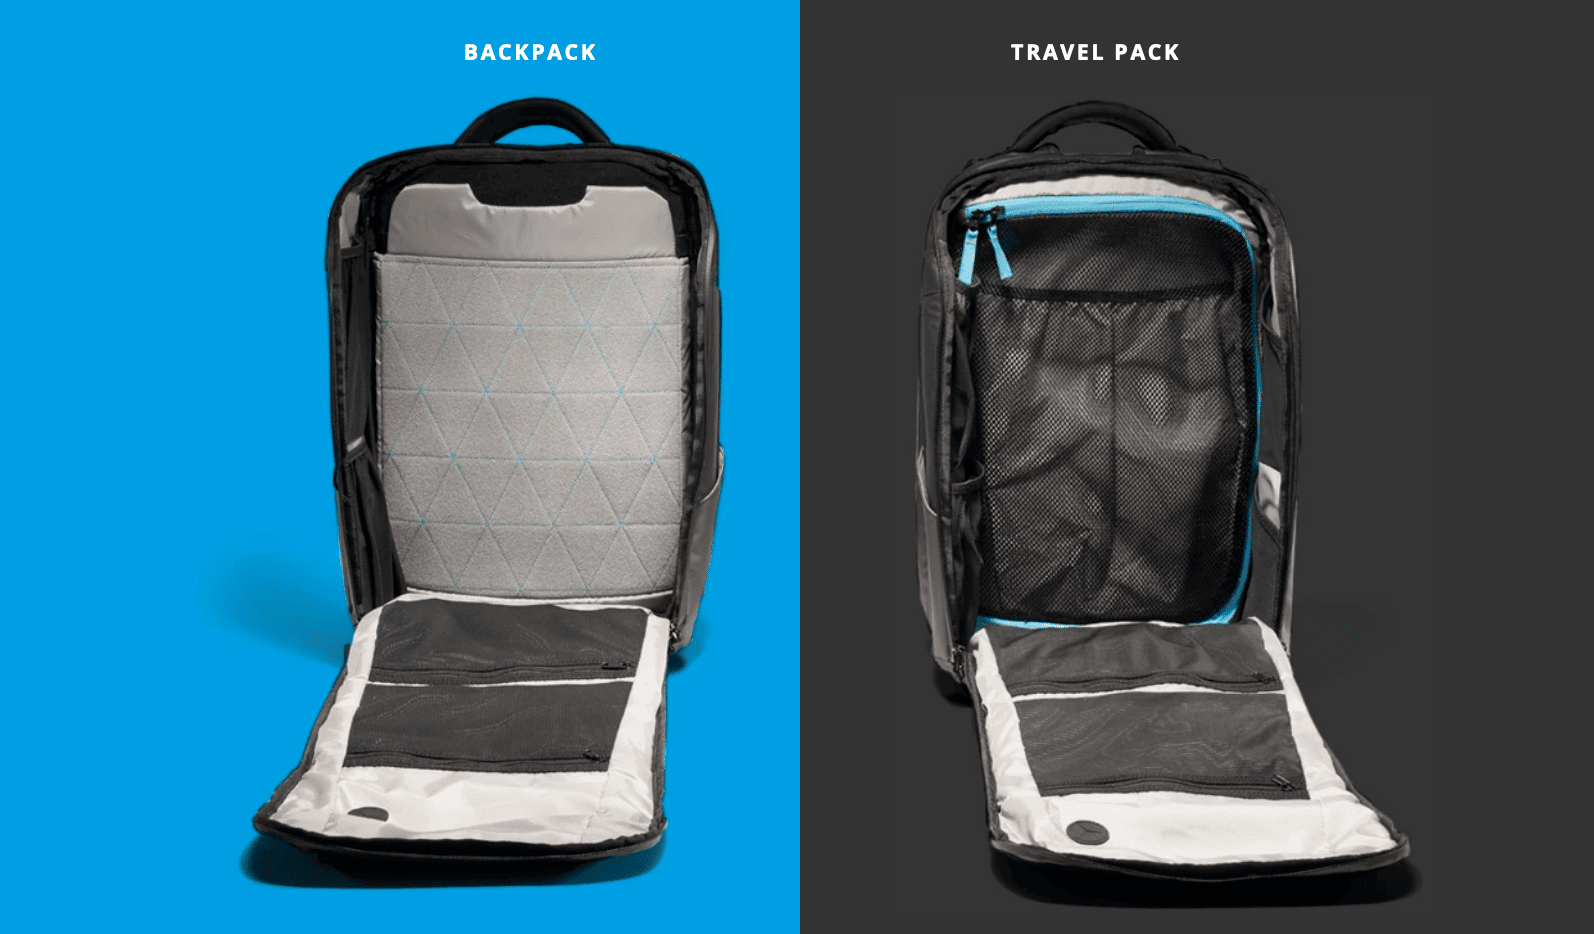 nomatic backpack vs travel pack